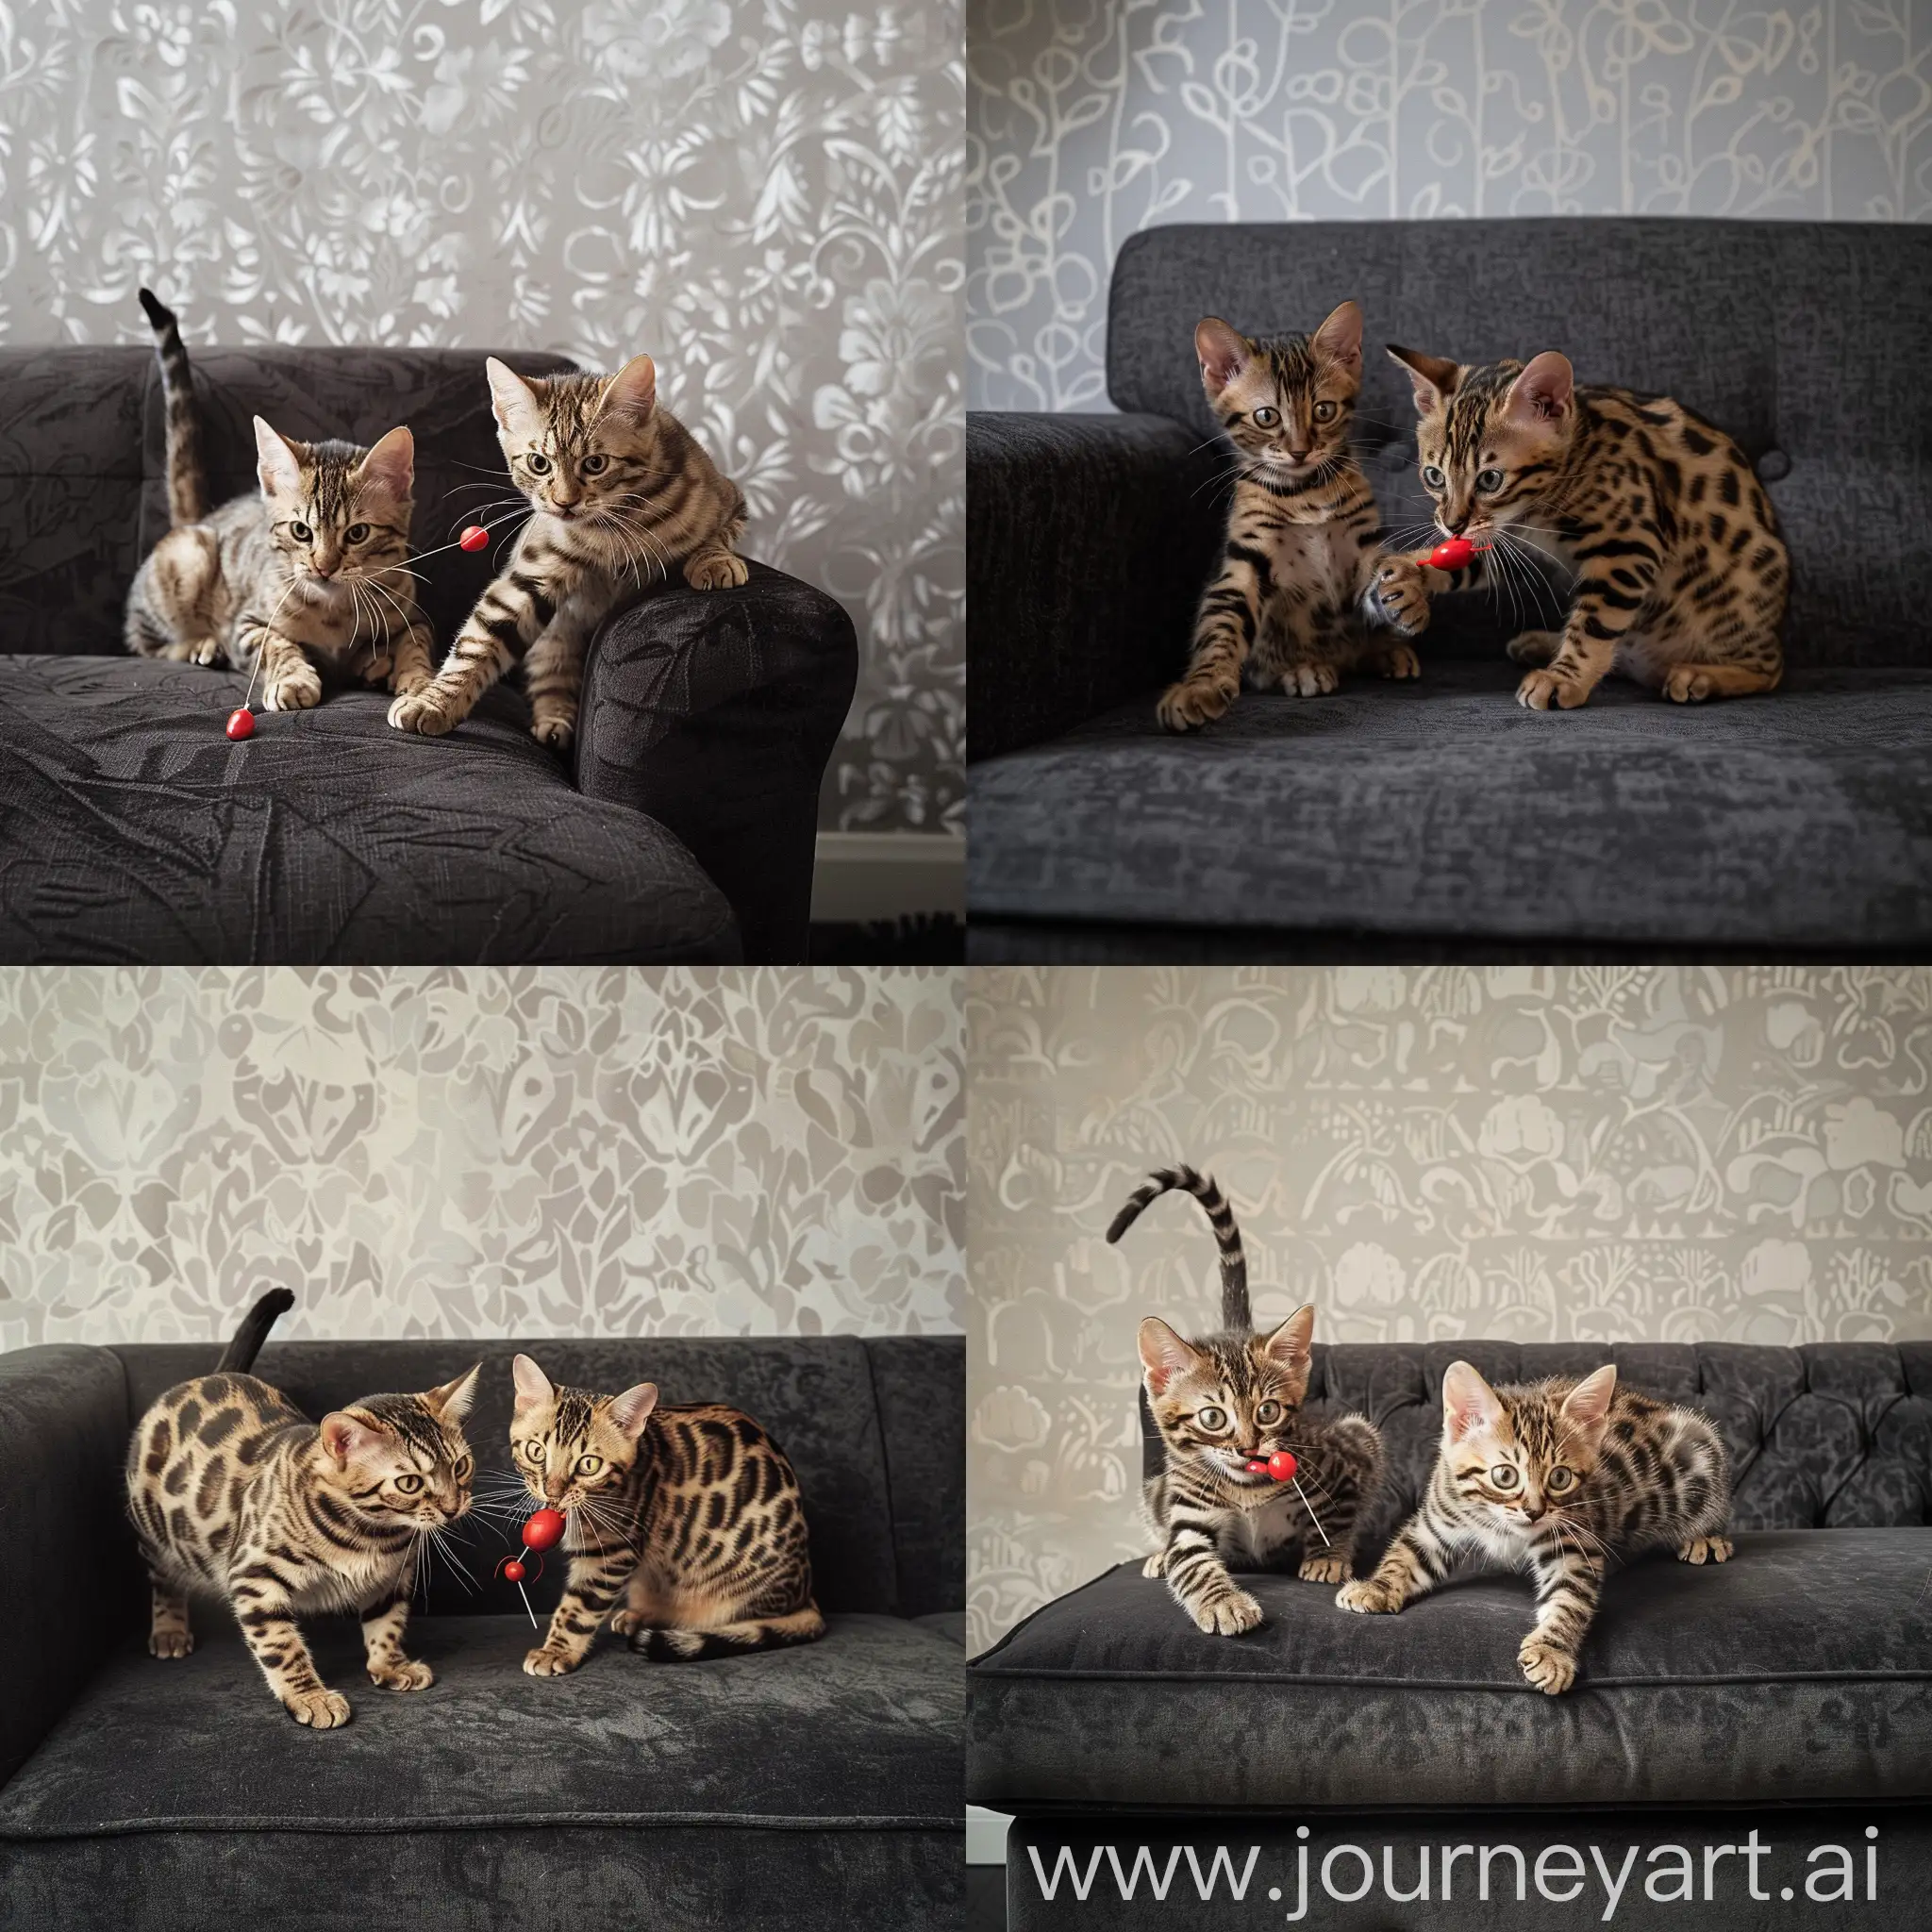 Две кошки породы бенгальской играют на темно сером диване, на фоне светло серых обоев, одна кошка толще и держит в зубах красную мышку, другая кошка щербатая, обе смотрят в кадр